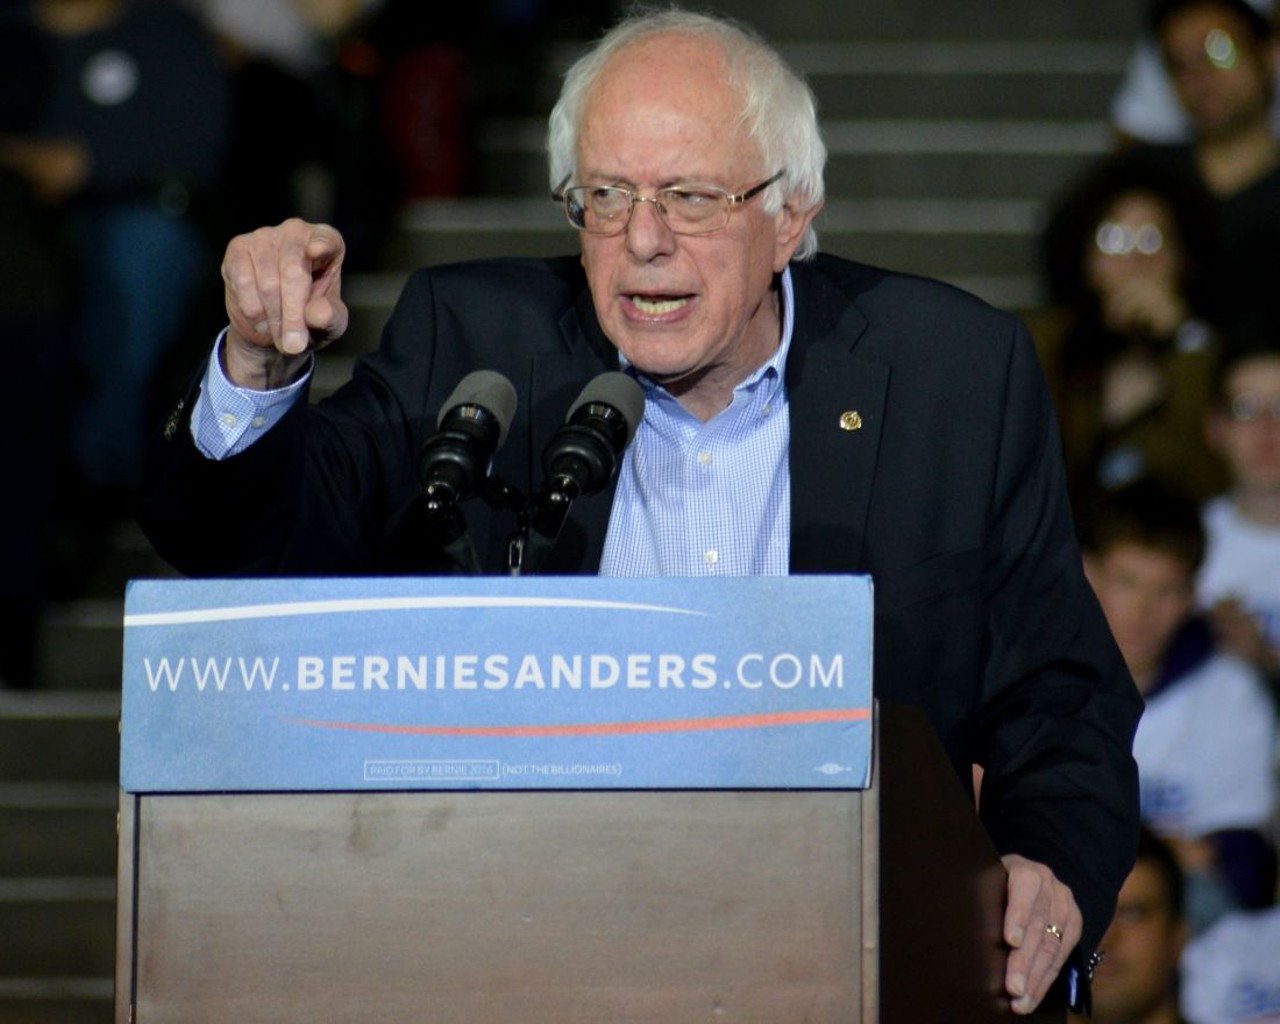 PHOTOS: Bernie Sanders Visits the Wolstein Center in Cleveland